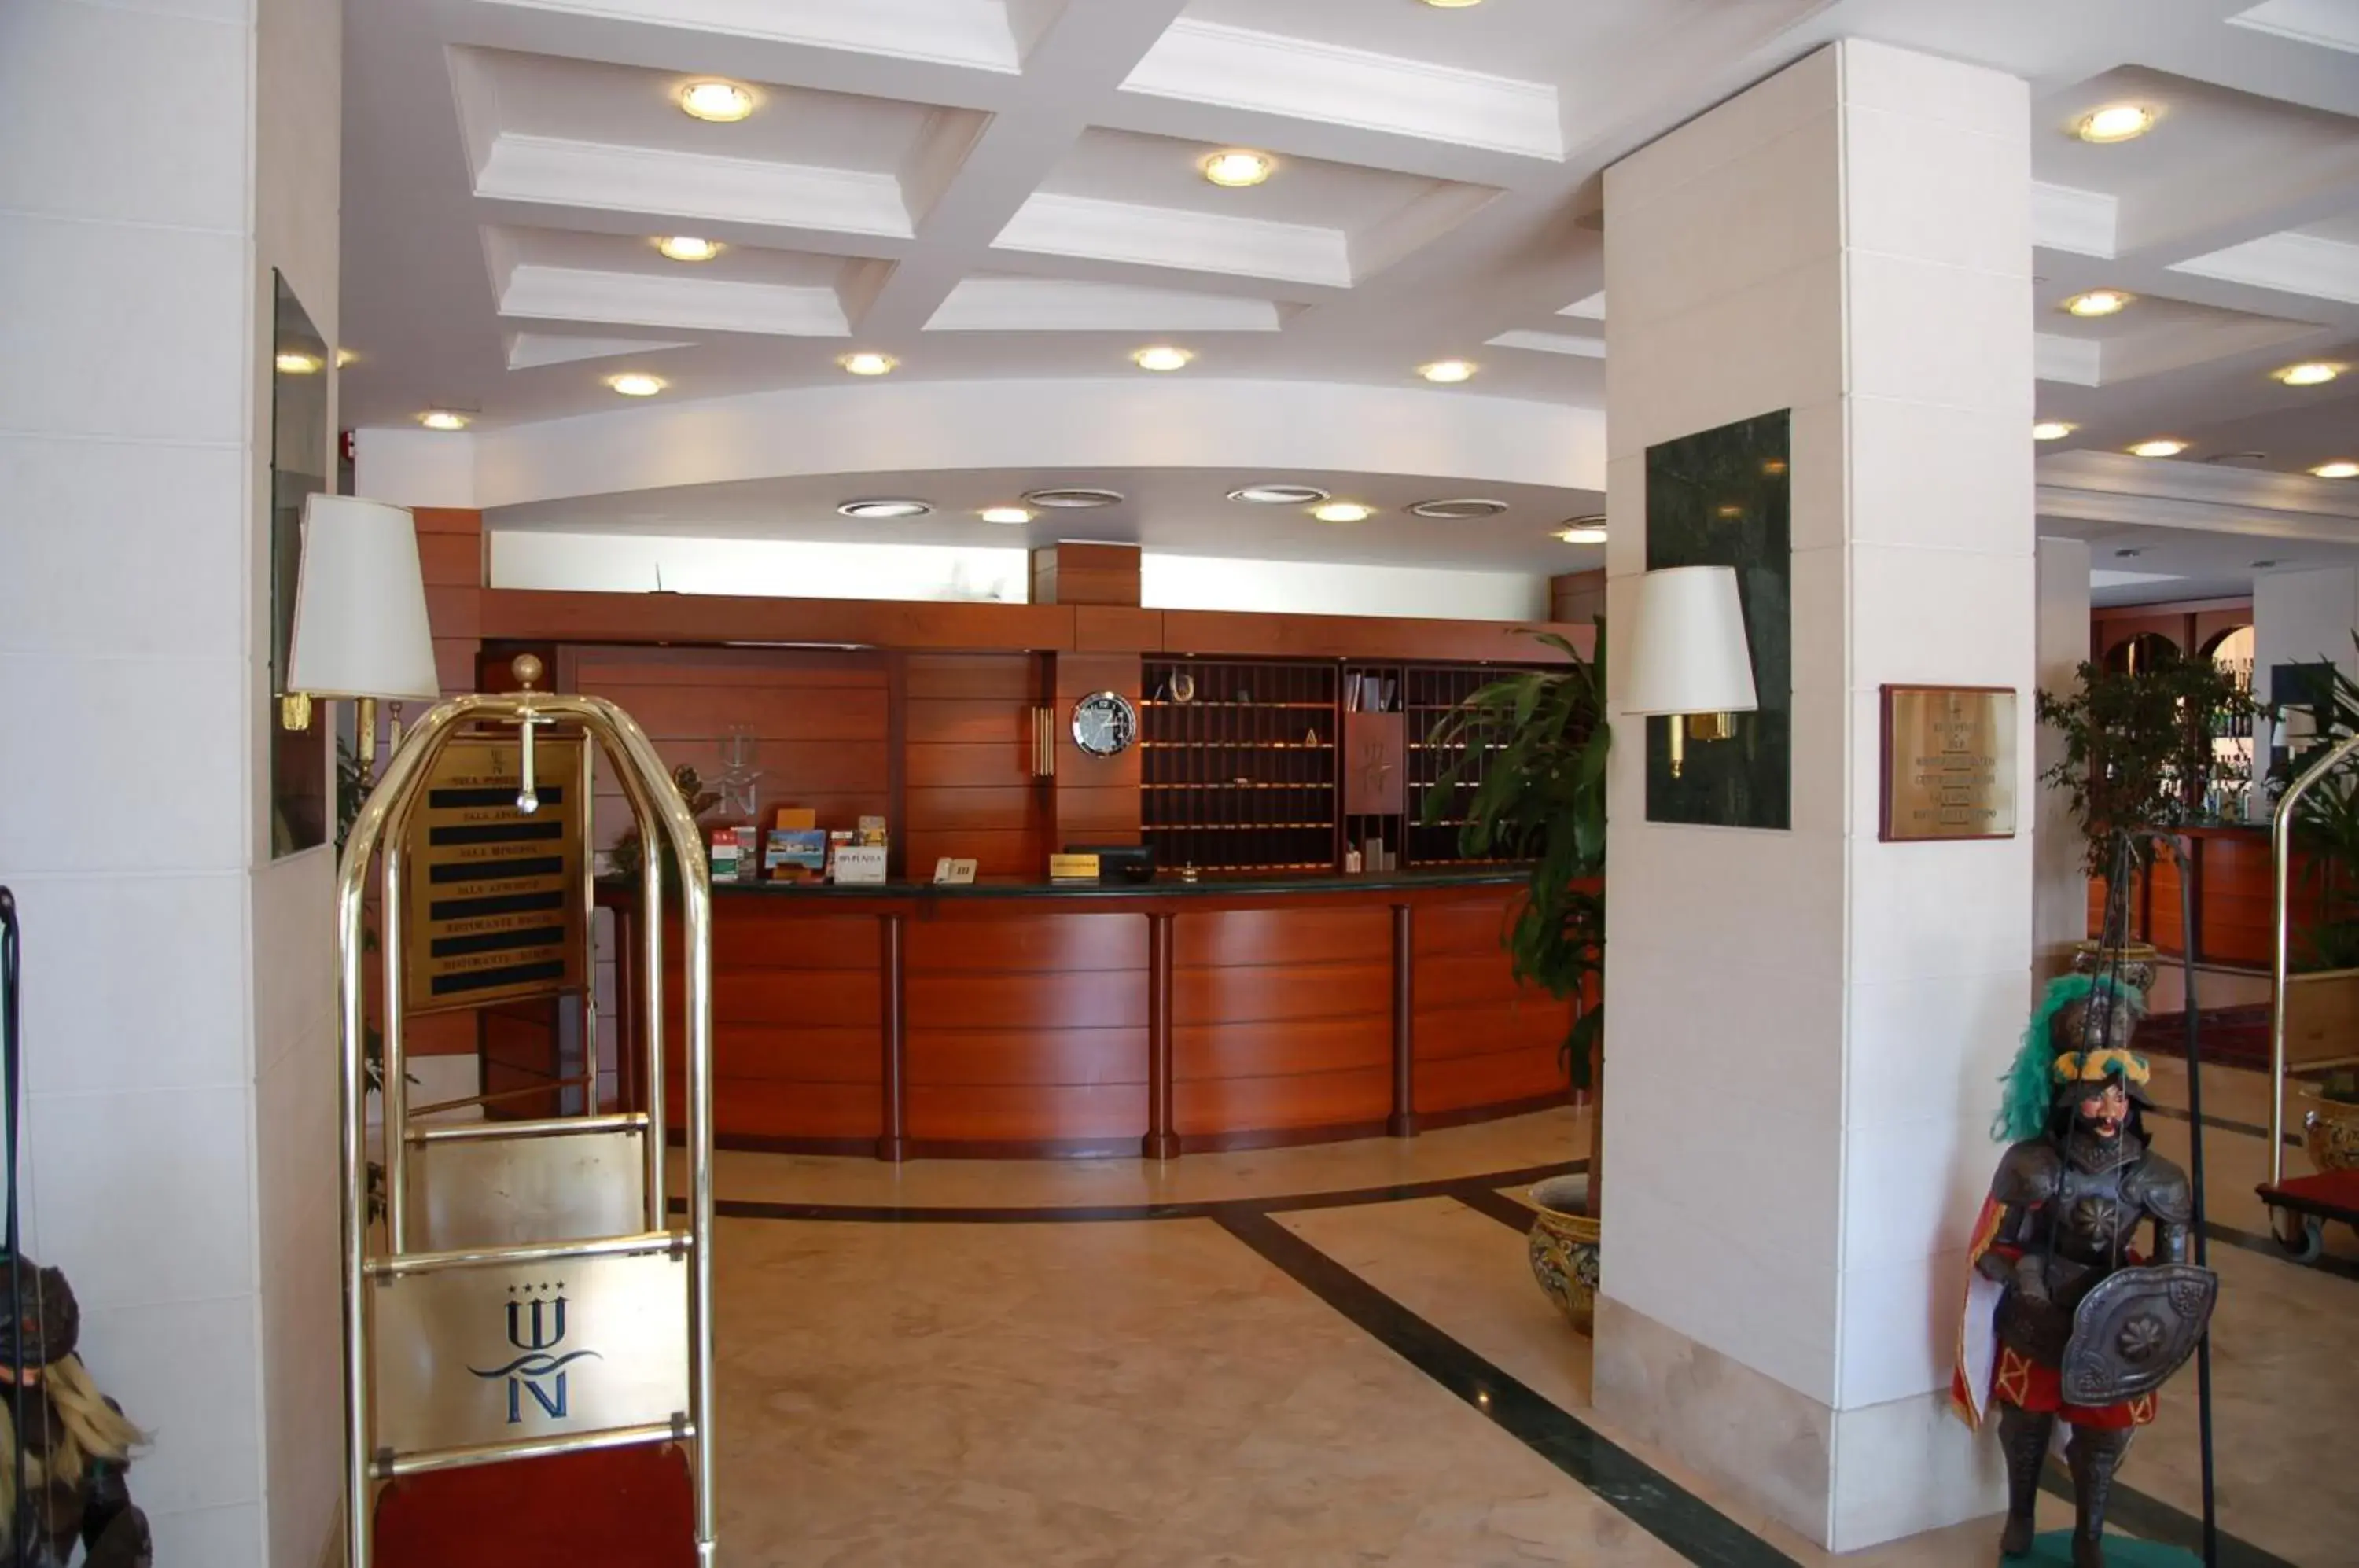 Lobby or reception, Lobby/Reception in Hotel Nettuno